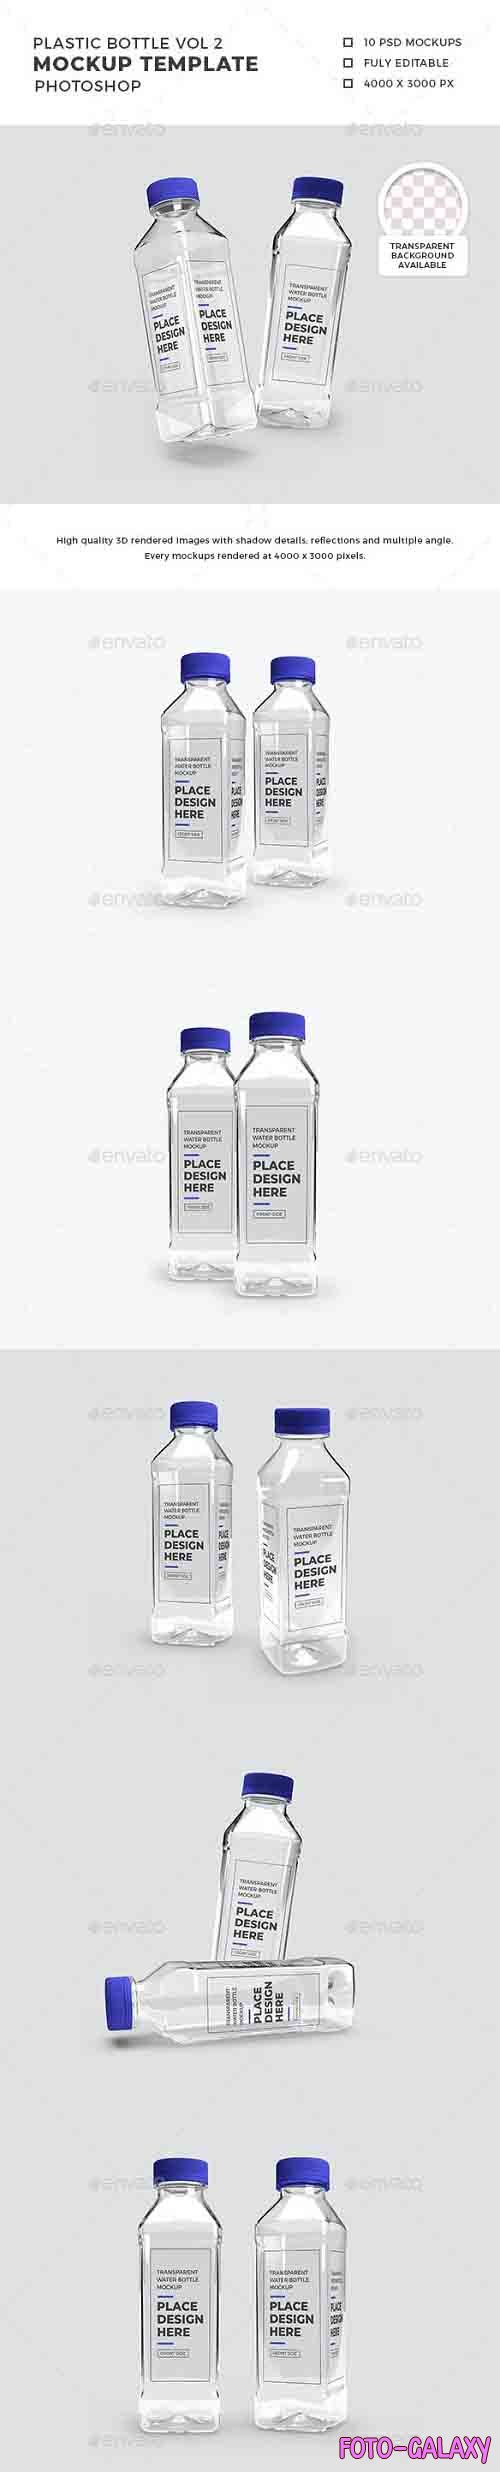 Transparent Plastic Bottle Packaging Mockup Vol 2 - 32552999